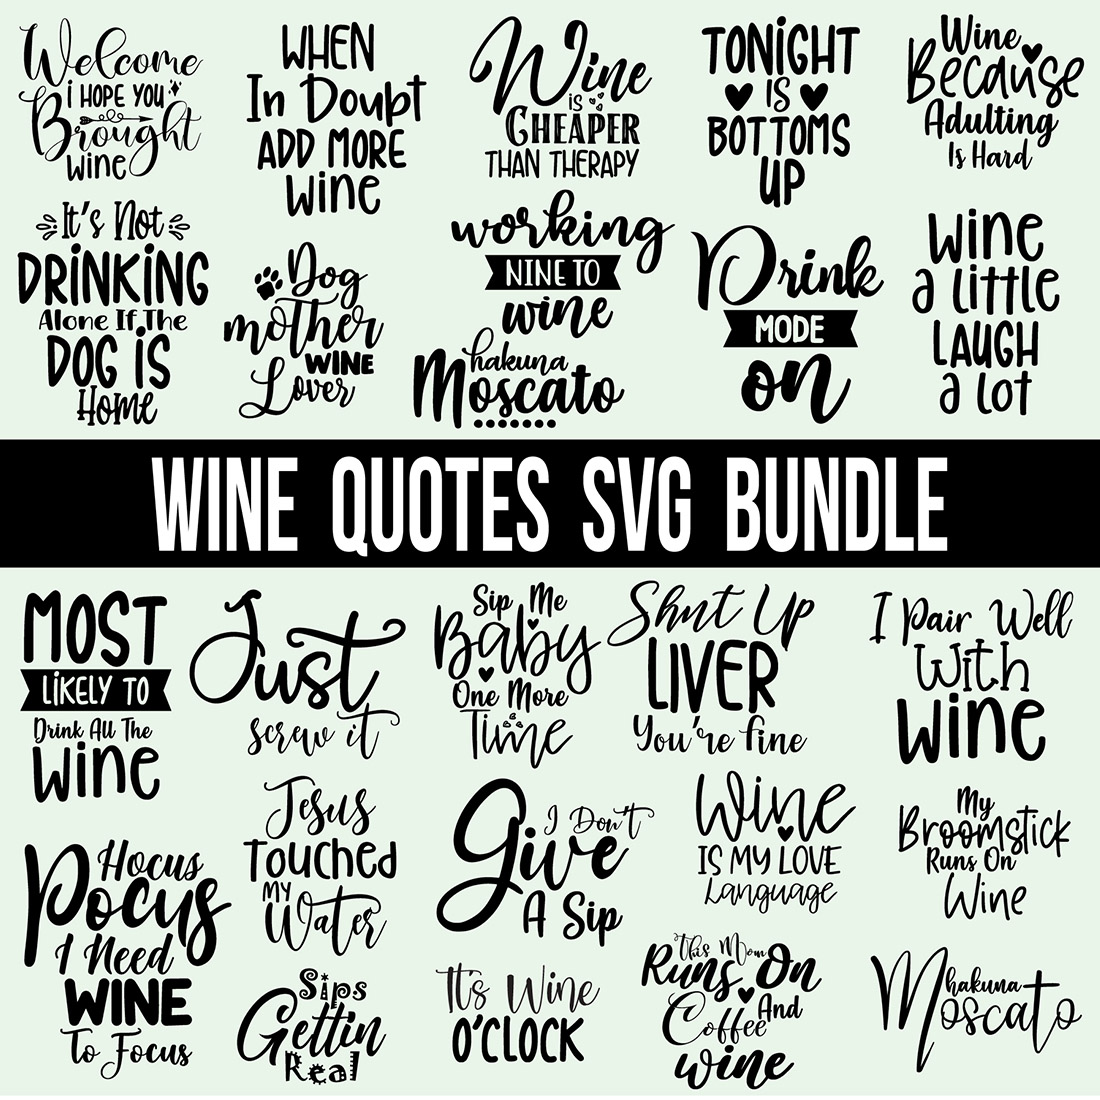 Wine SVG Bundle cover image.